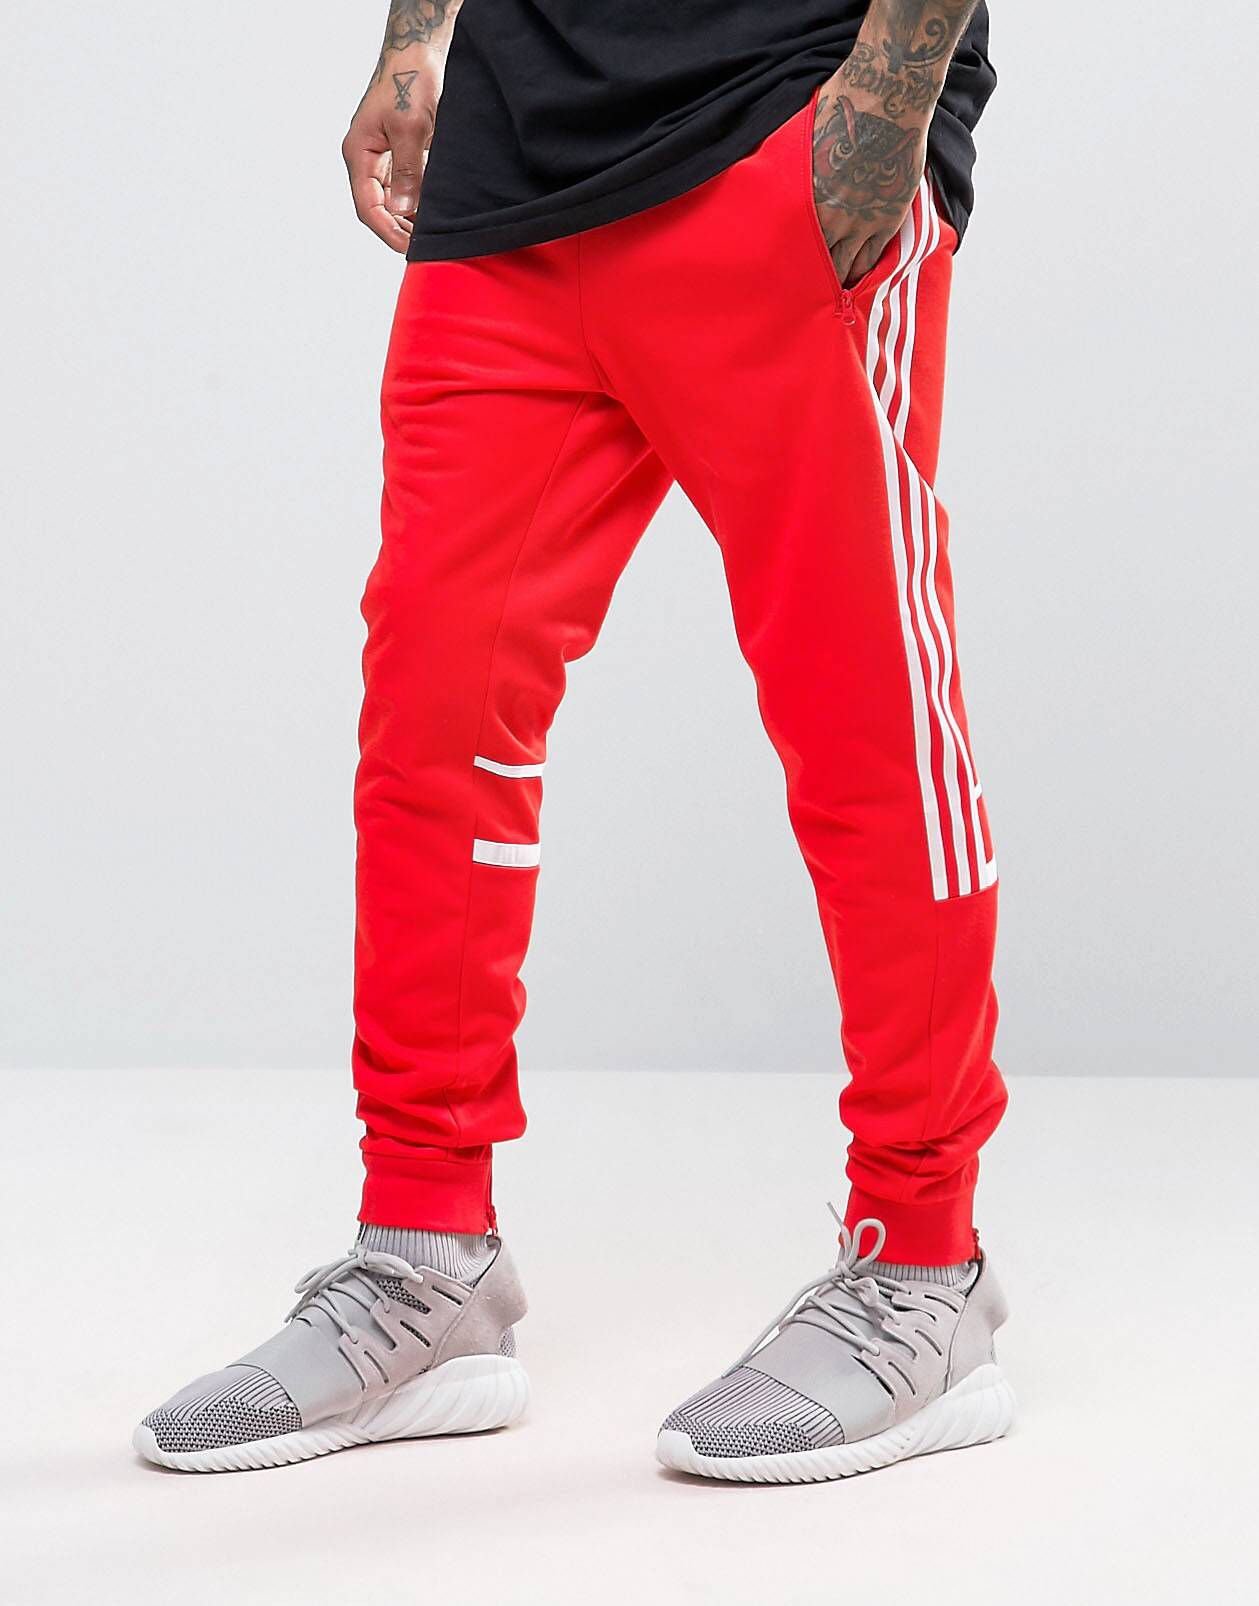 Красные штаны адидас. Красные джоггеры adidas Originals. Adidas джоггеры мужские красные. Adidas Jogger штаны. Красные спортивные джоггеры адидас.